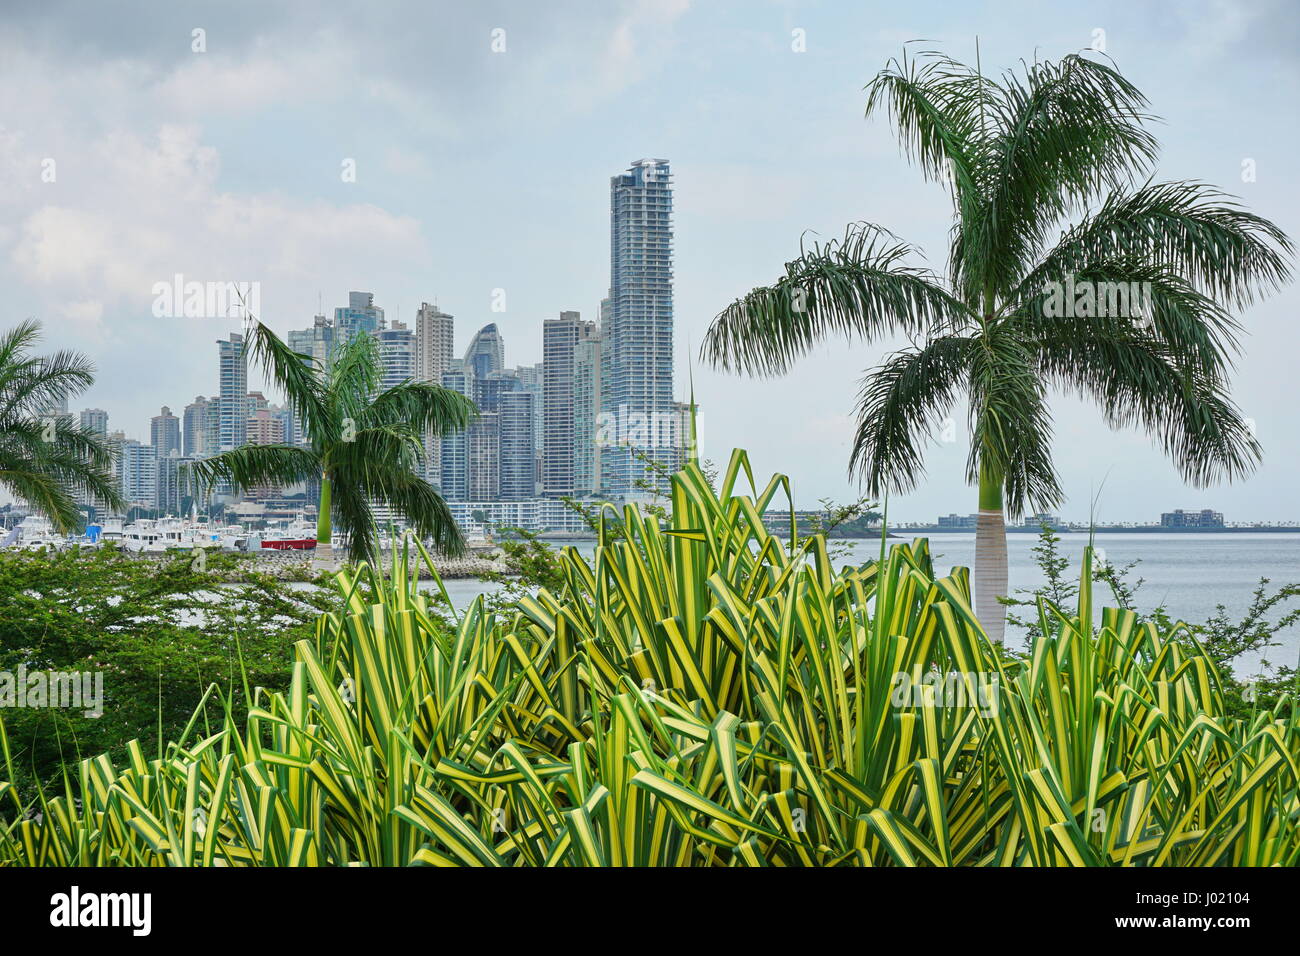 Grattacieli con palme e piante pandanus in primo piano, Panama City, Panama America Centrale Foto Stock